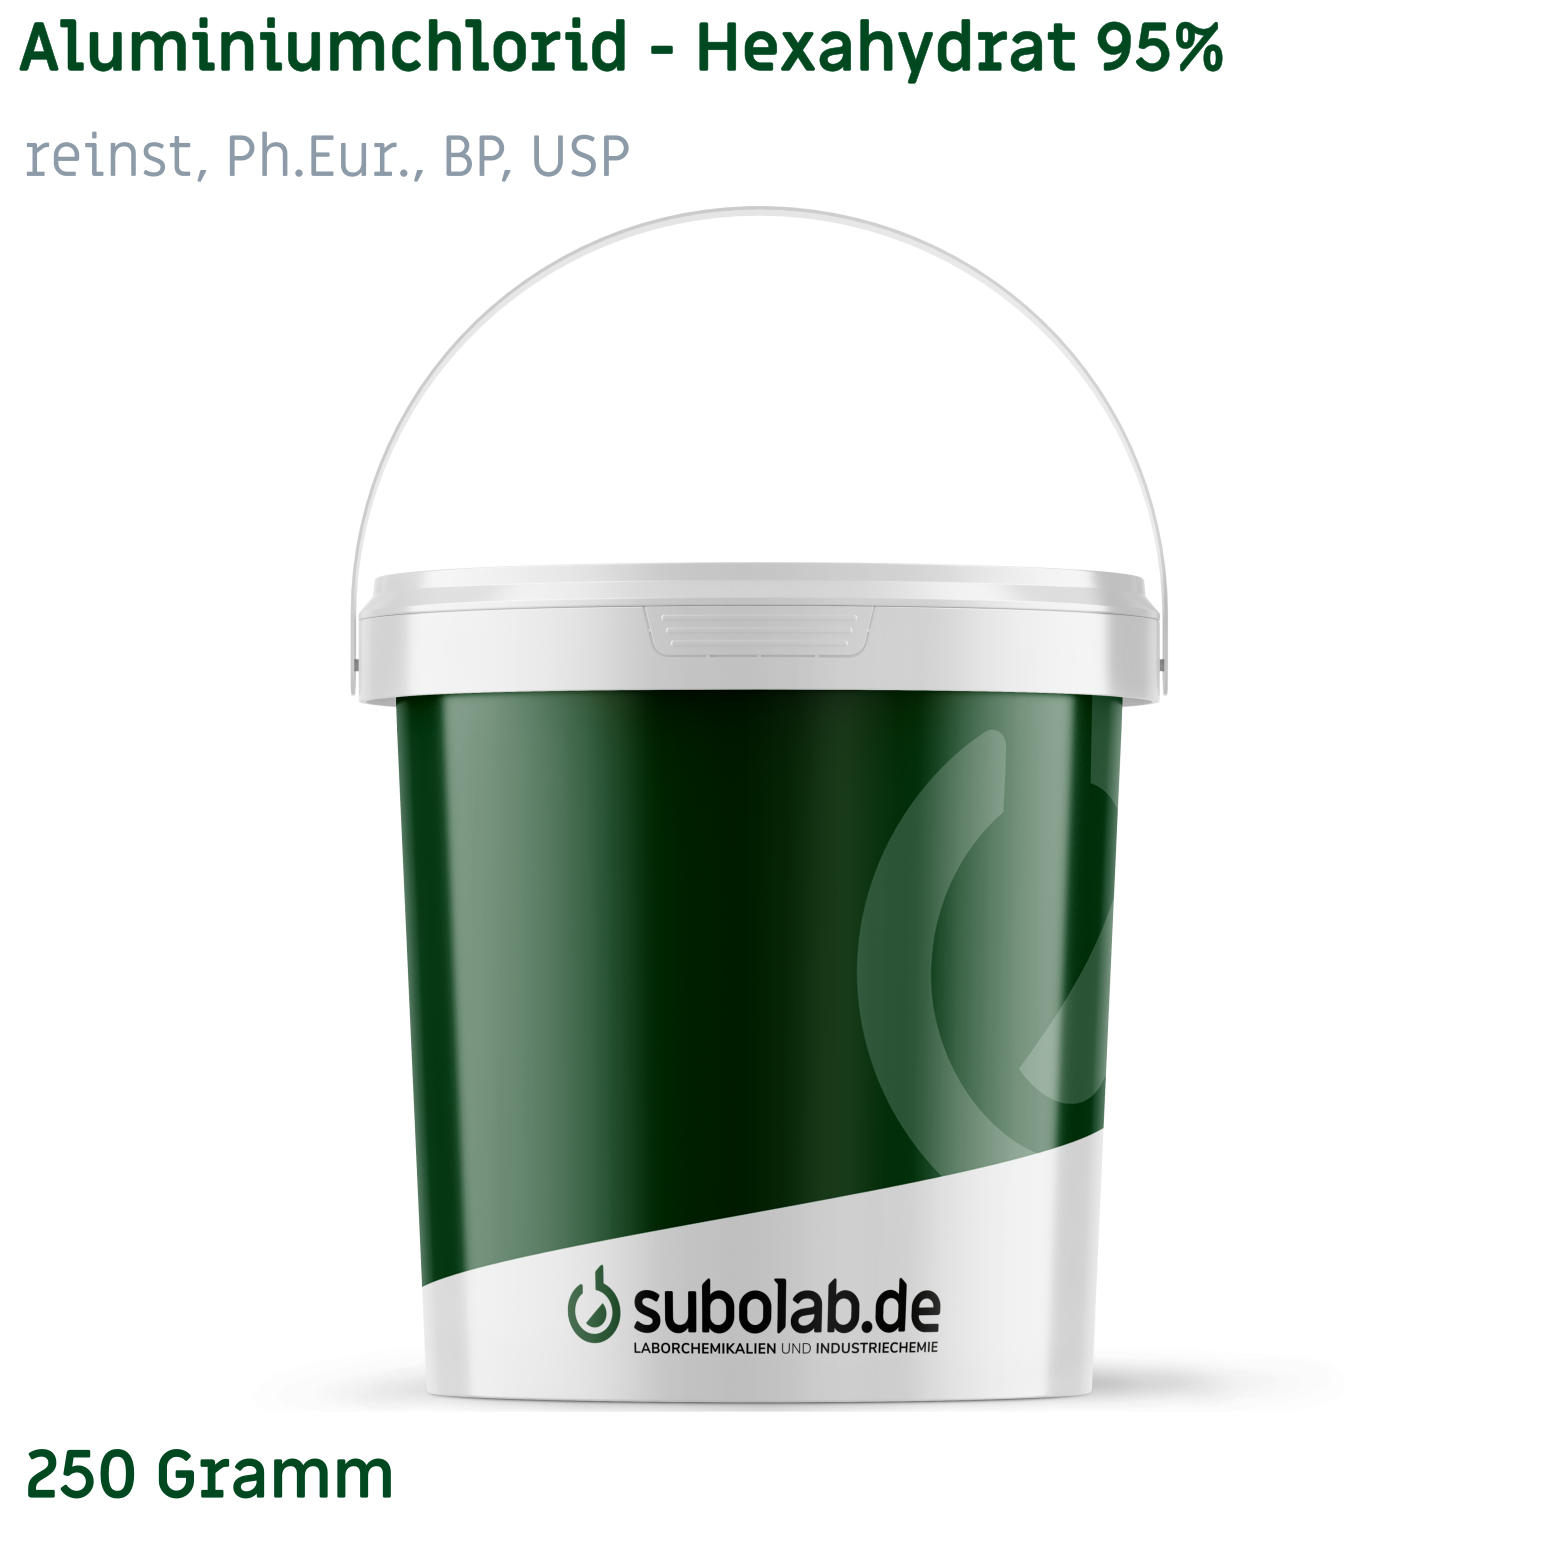 Bild von Aluminiumchlorid - Hexahydrat 95% reinst, Ph.Eur., BP, USP (250 Gramm)